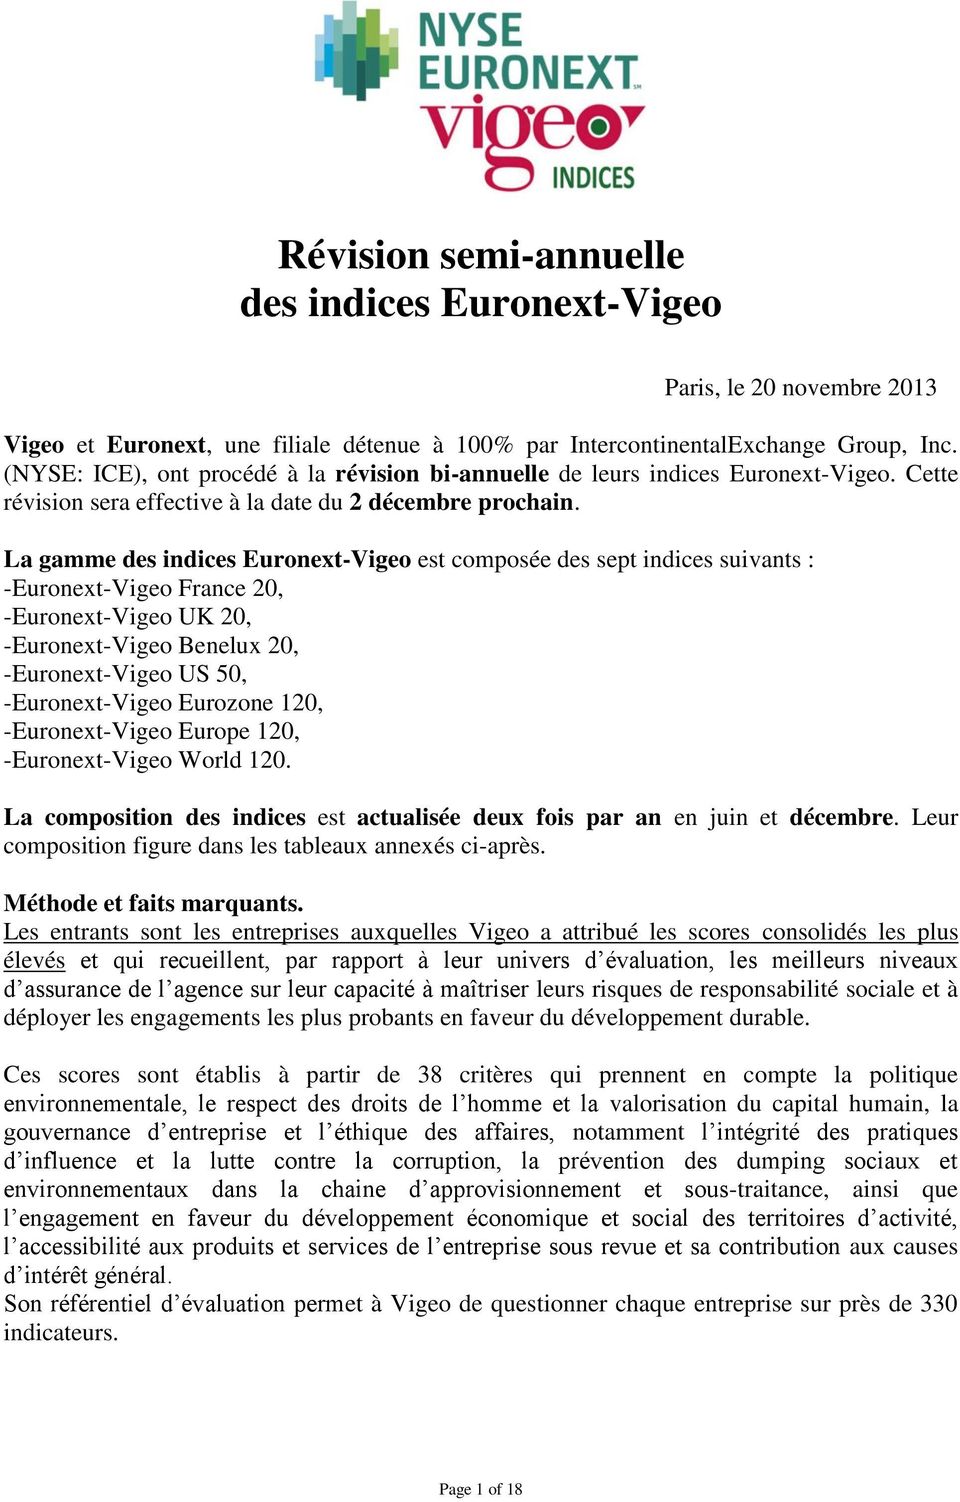 La gamme des indices Euronext-Vigeo est composée des sept indices suivants : -Euronext-Vigeo France 20, -Euronext-Vigeo UK 20, -Euronext-Vigeo Benelux 20, -Euronext-Vigeo US 50, -Euronext-Vigeo